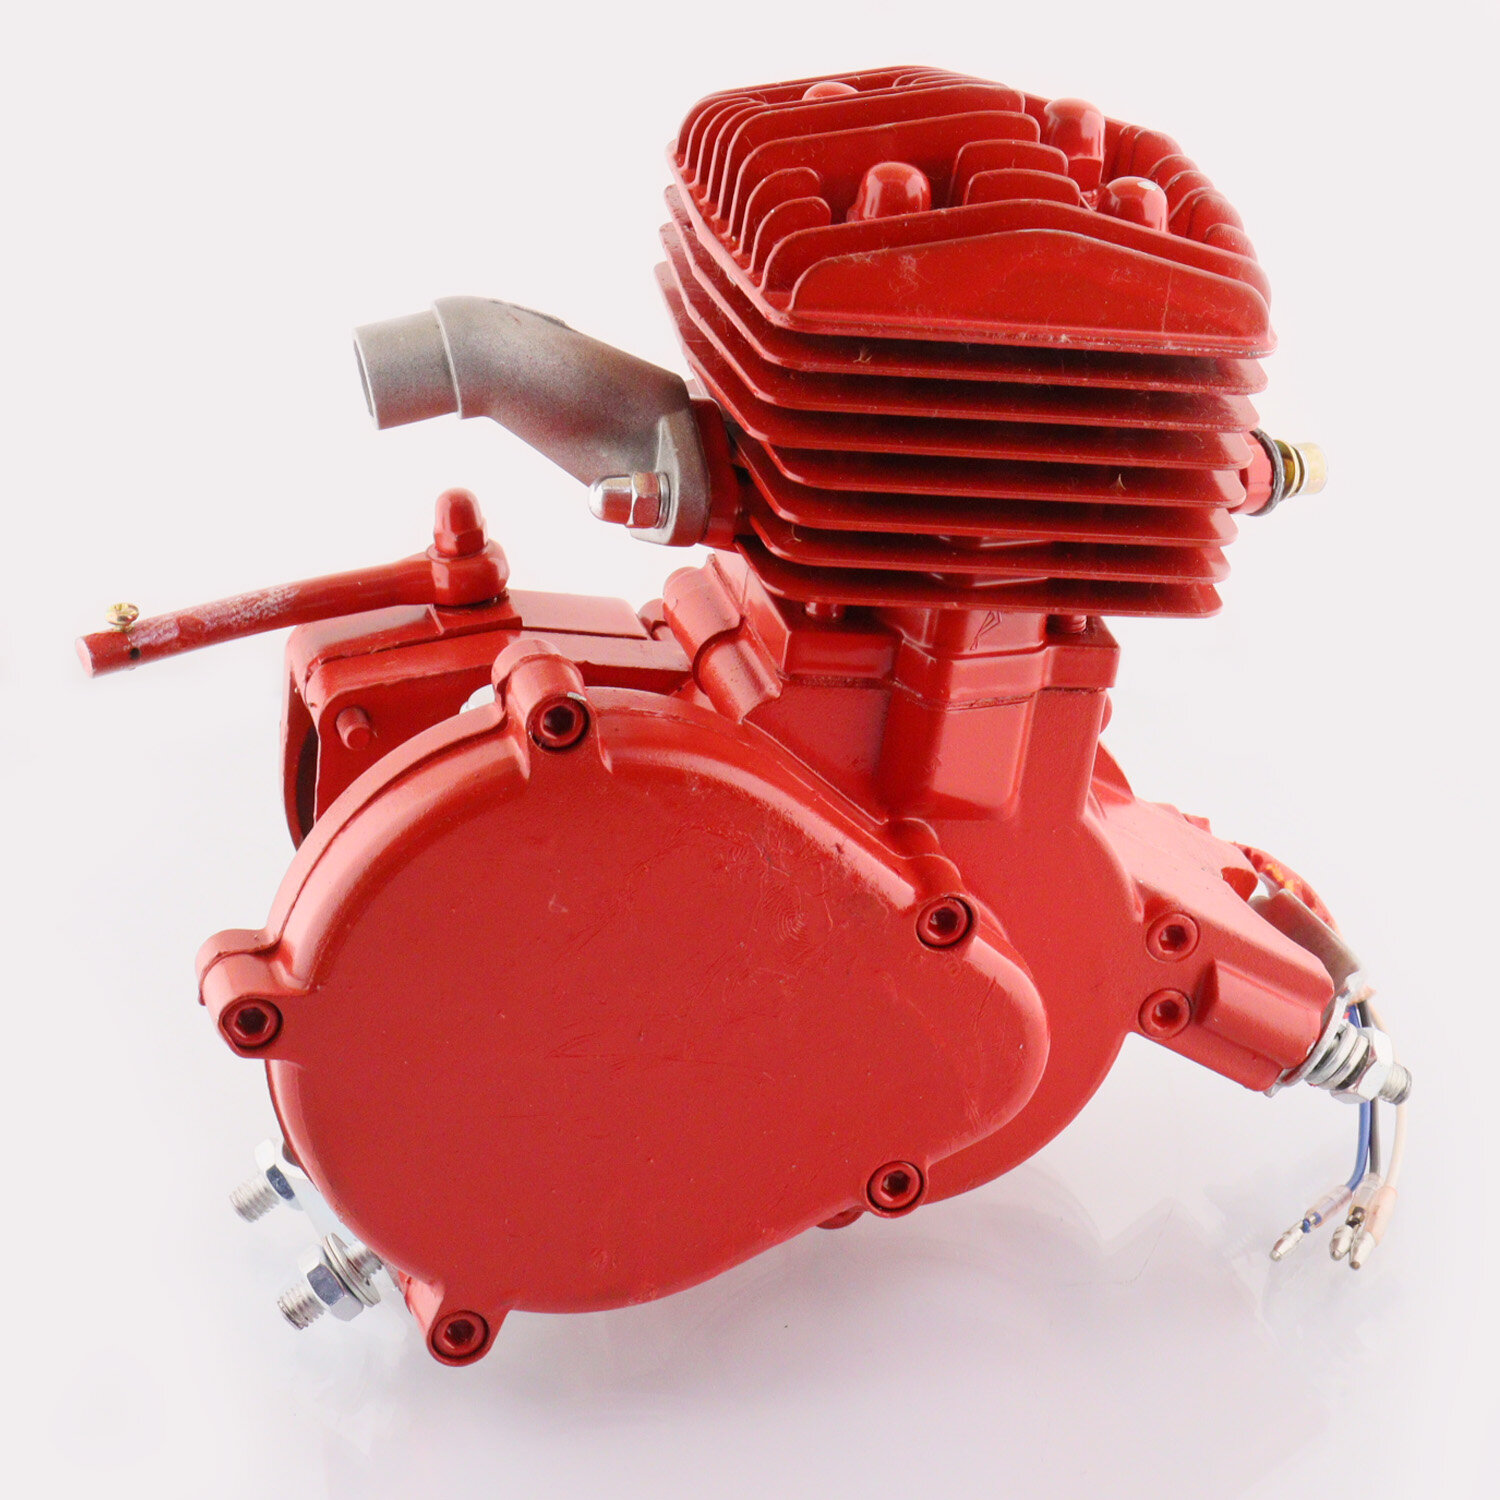 Двигатель веломотор F80 (80см3) комплект для установки, красный